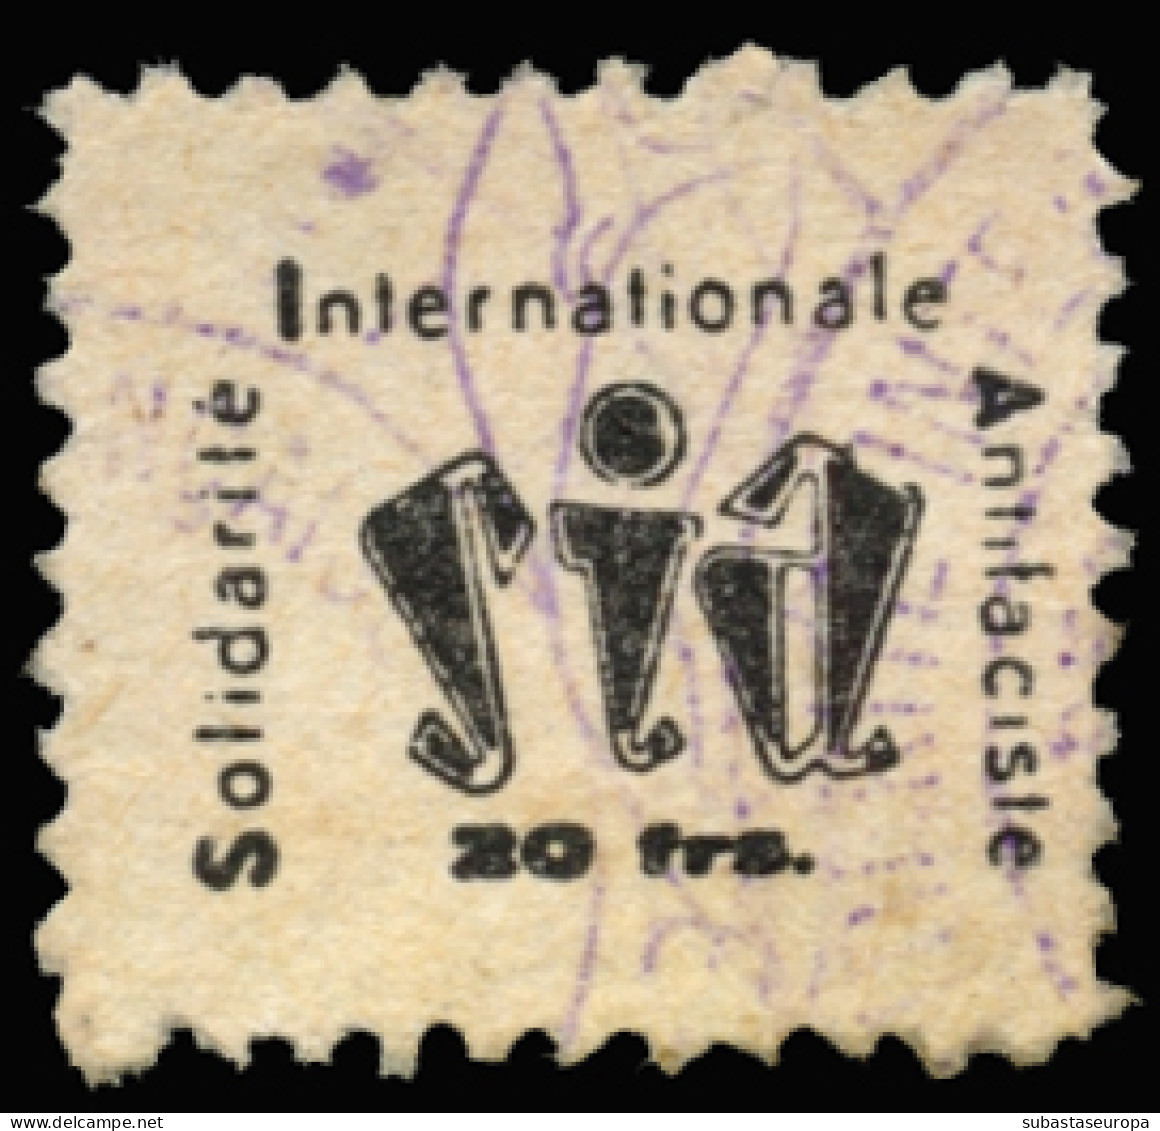 Francia. SIA. 20 Francos. Color Azul. - Spanish Civil War Labels